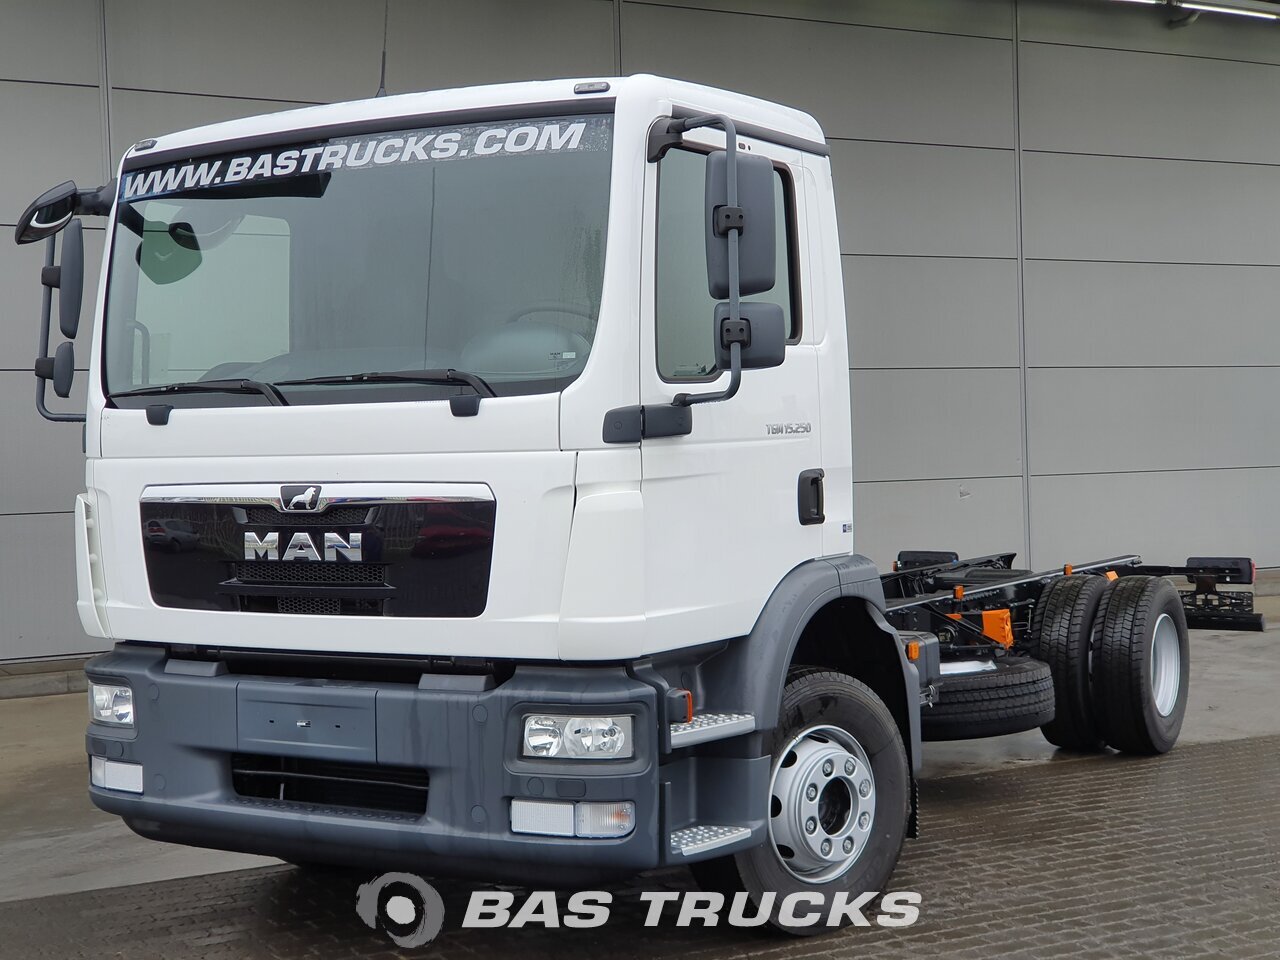 MAN TGM 15.250 New Chassis Truck - BAS Trucks